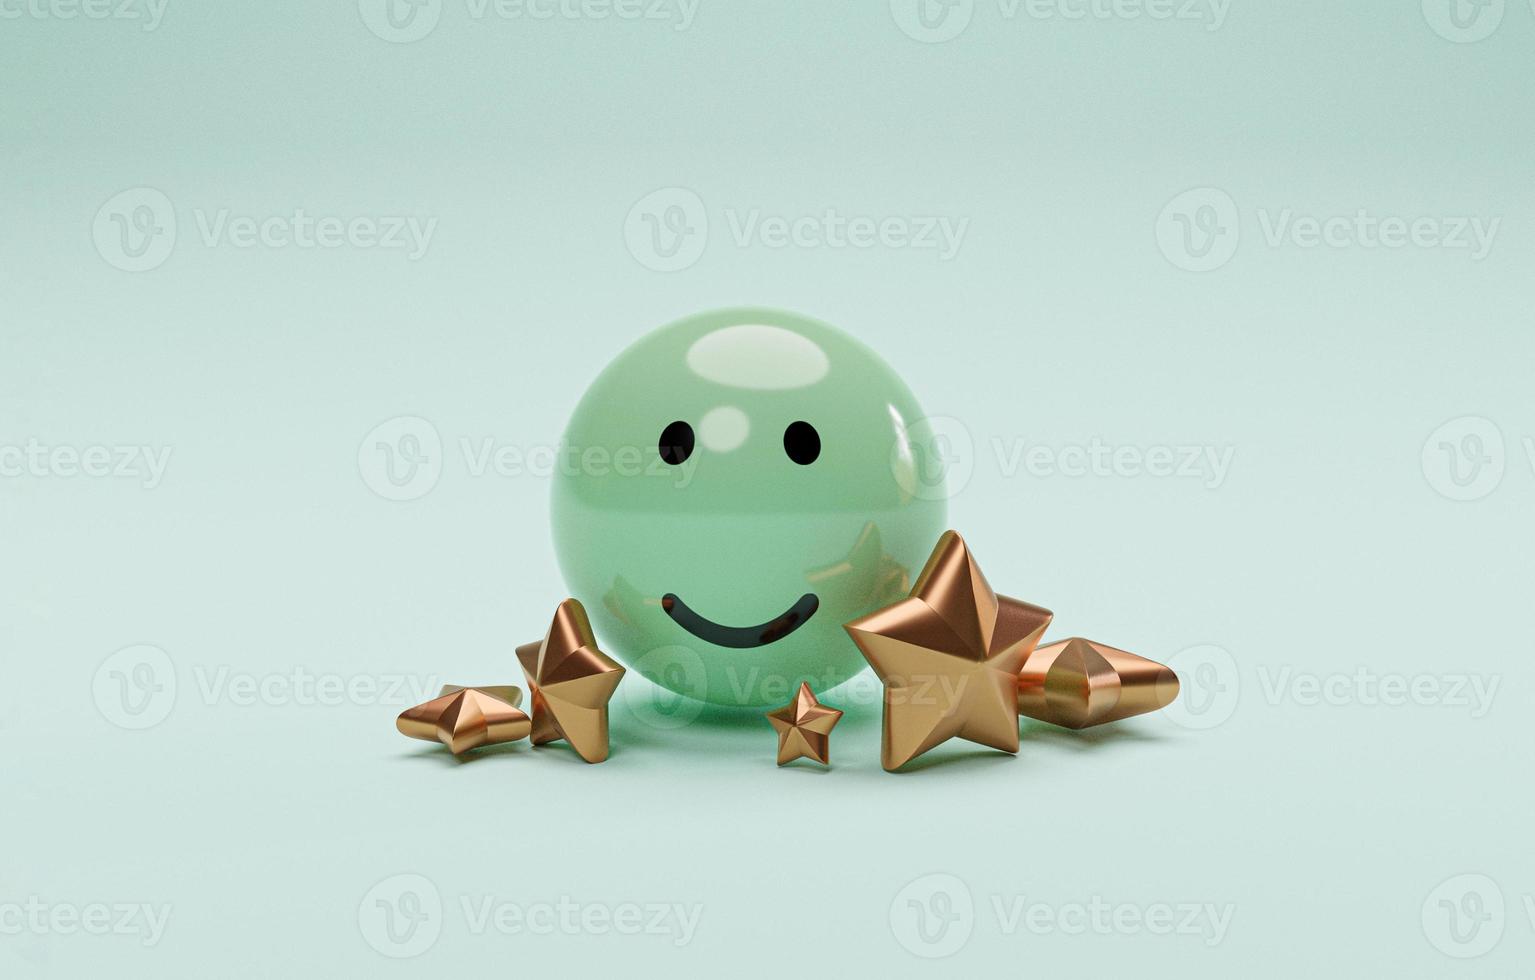 glimlach gezicht op groene bal met gouden vijf sterren voor klant- of klantenonderzoek en tevredenheid na gebruik product- en serviceconcept door 3d render. foto